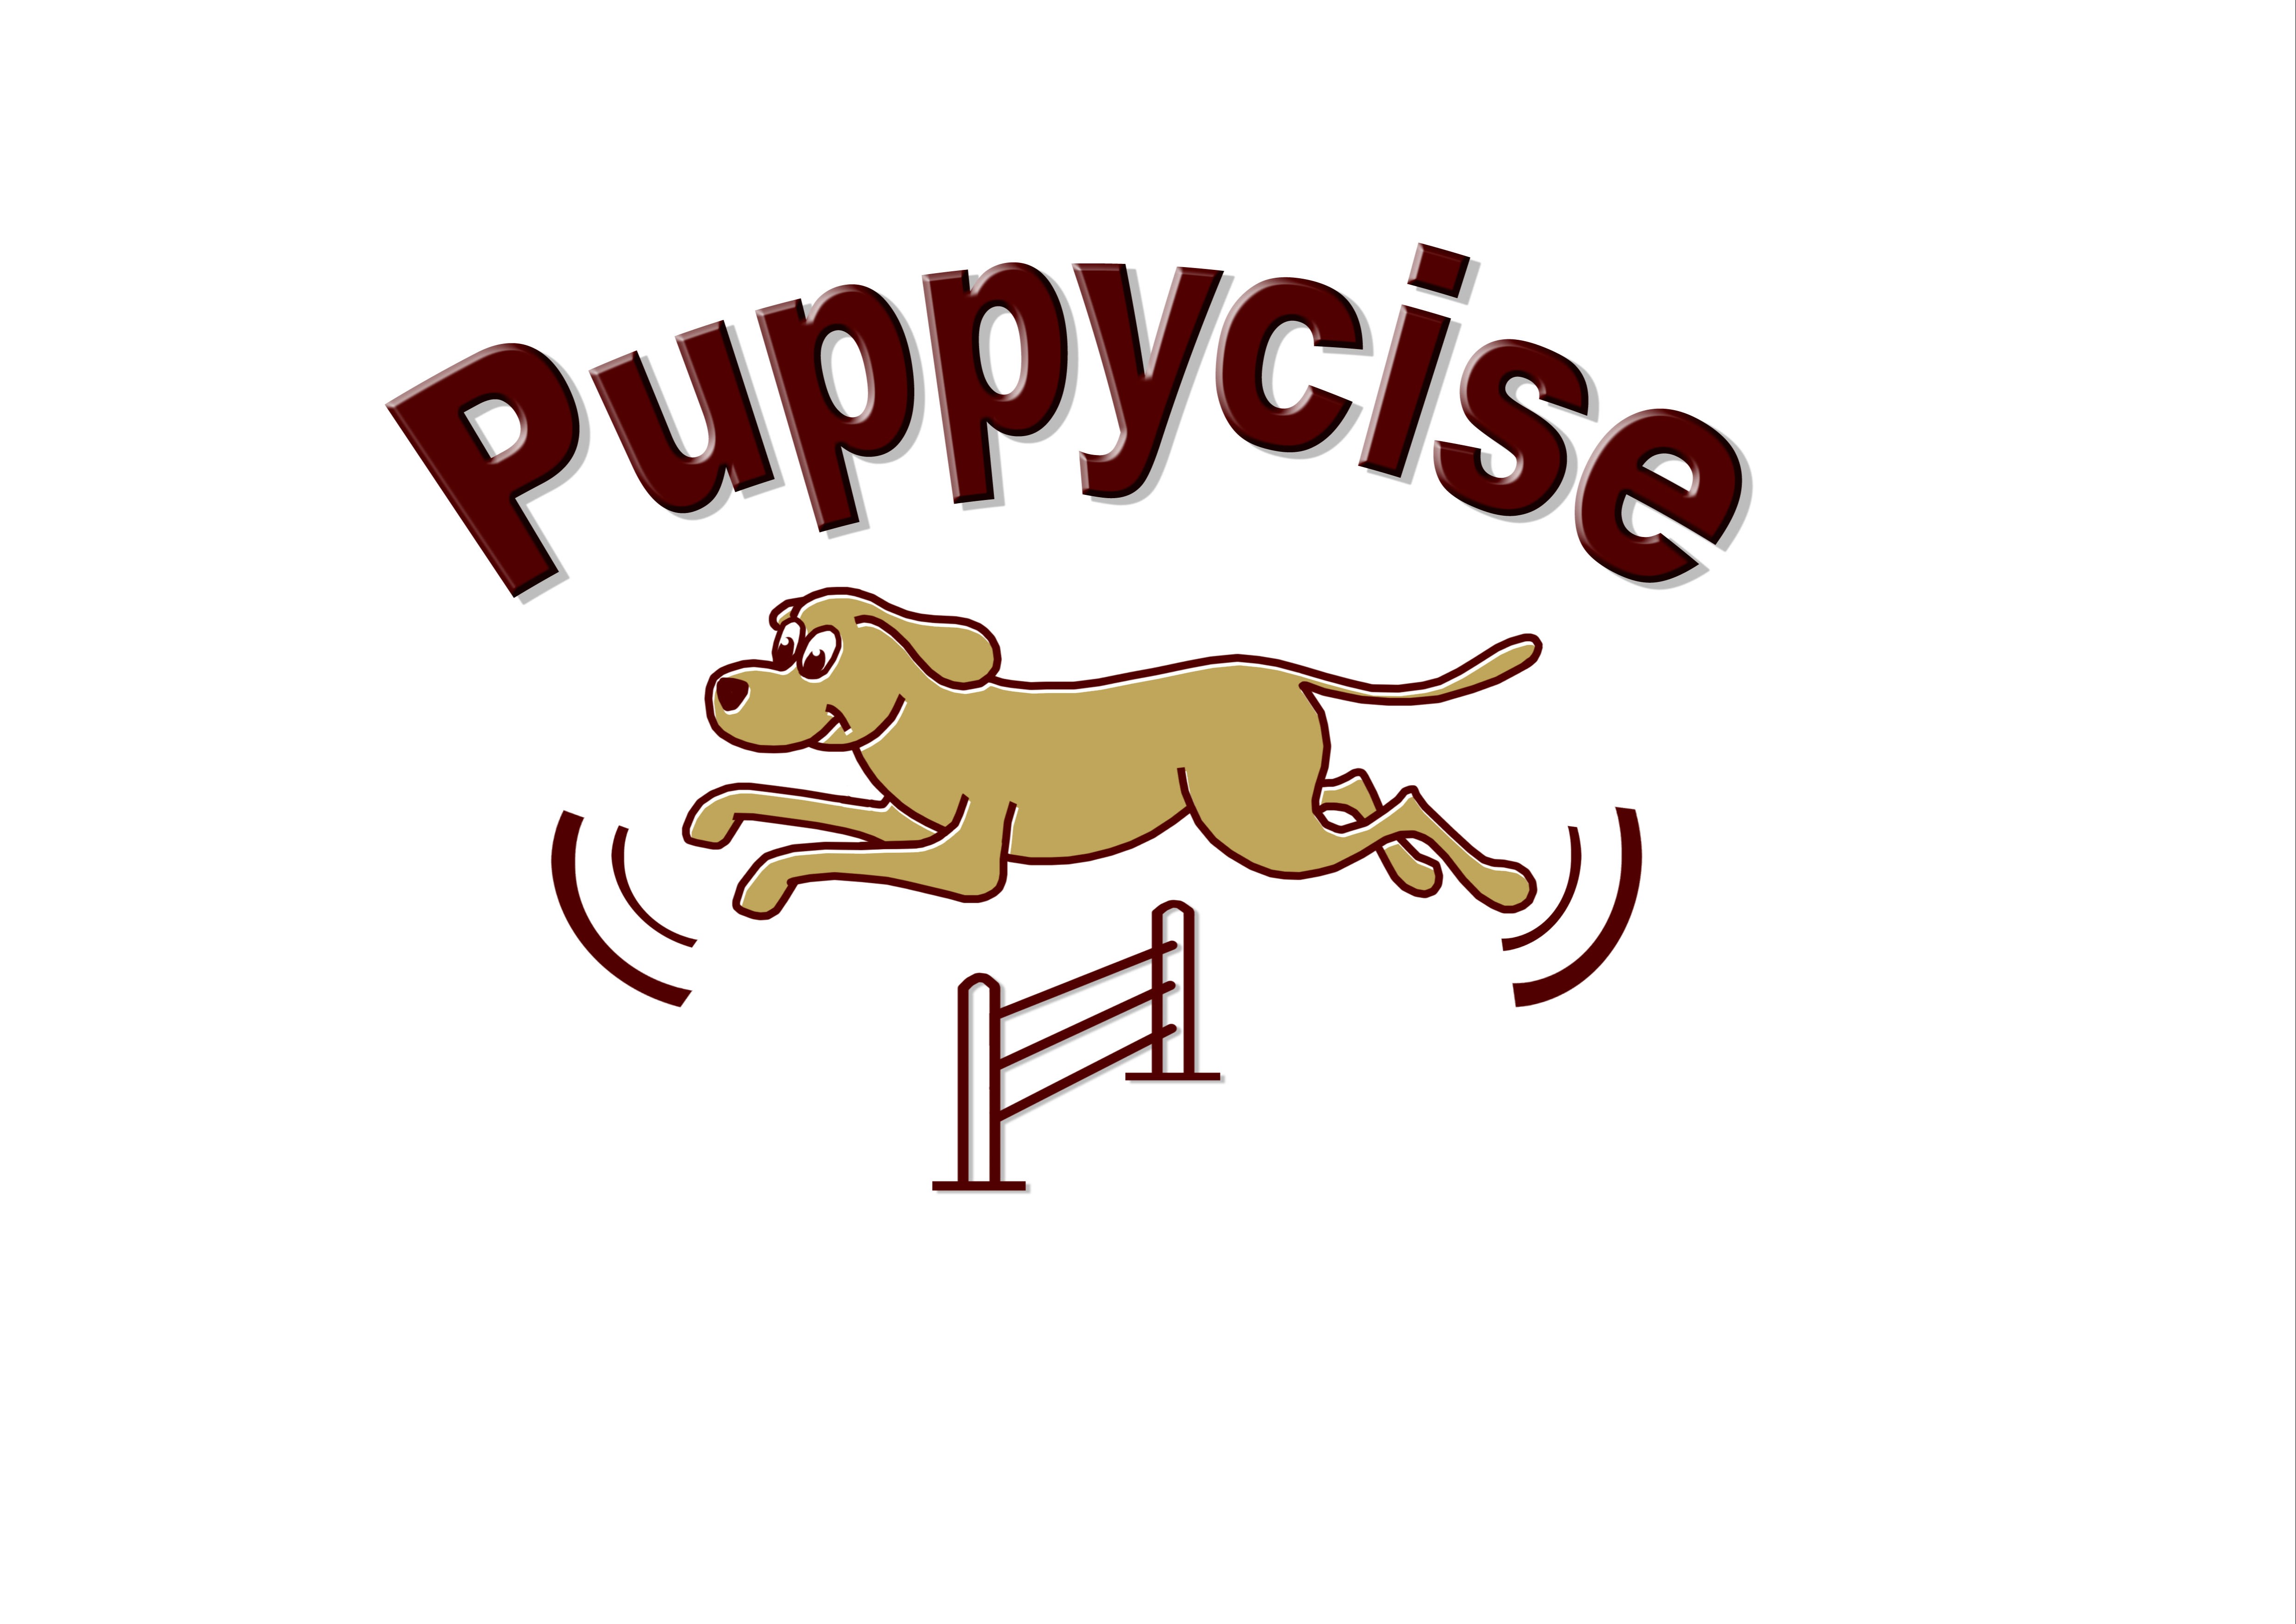 Puppycise